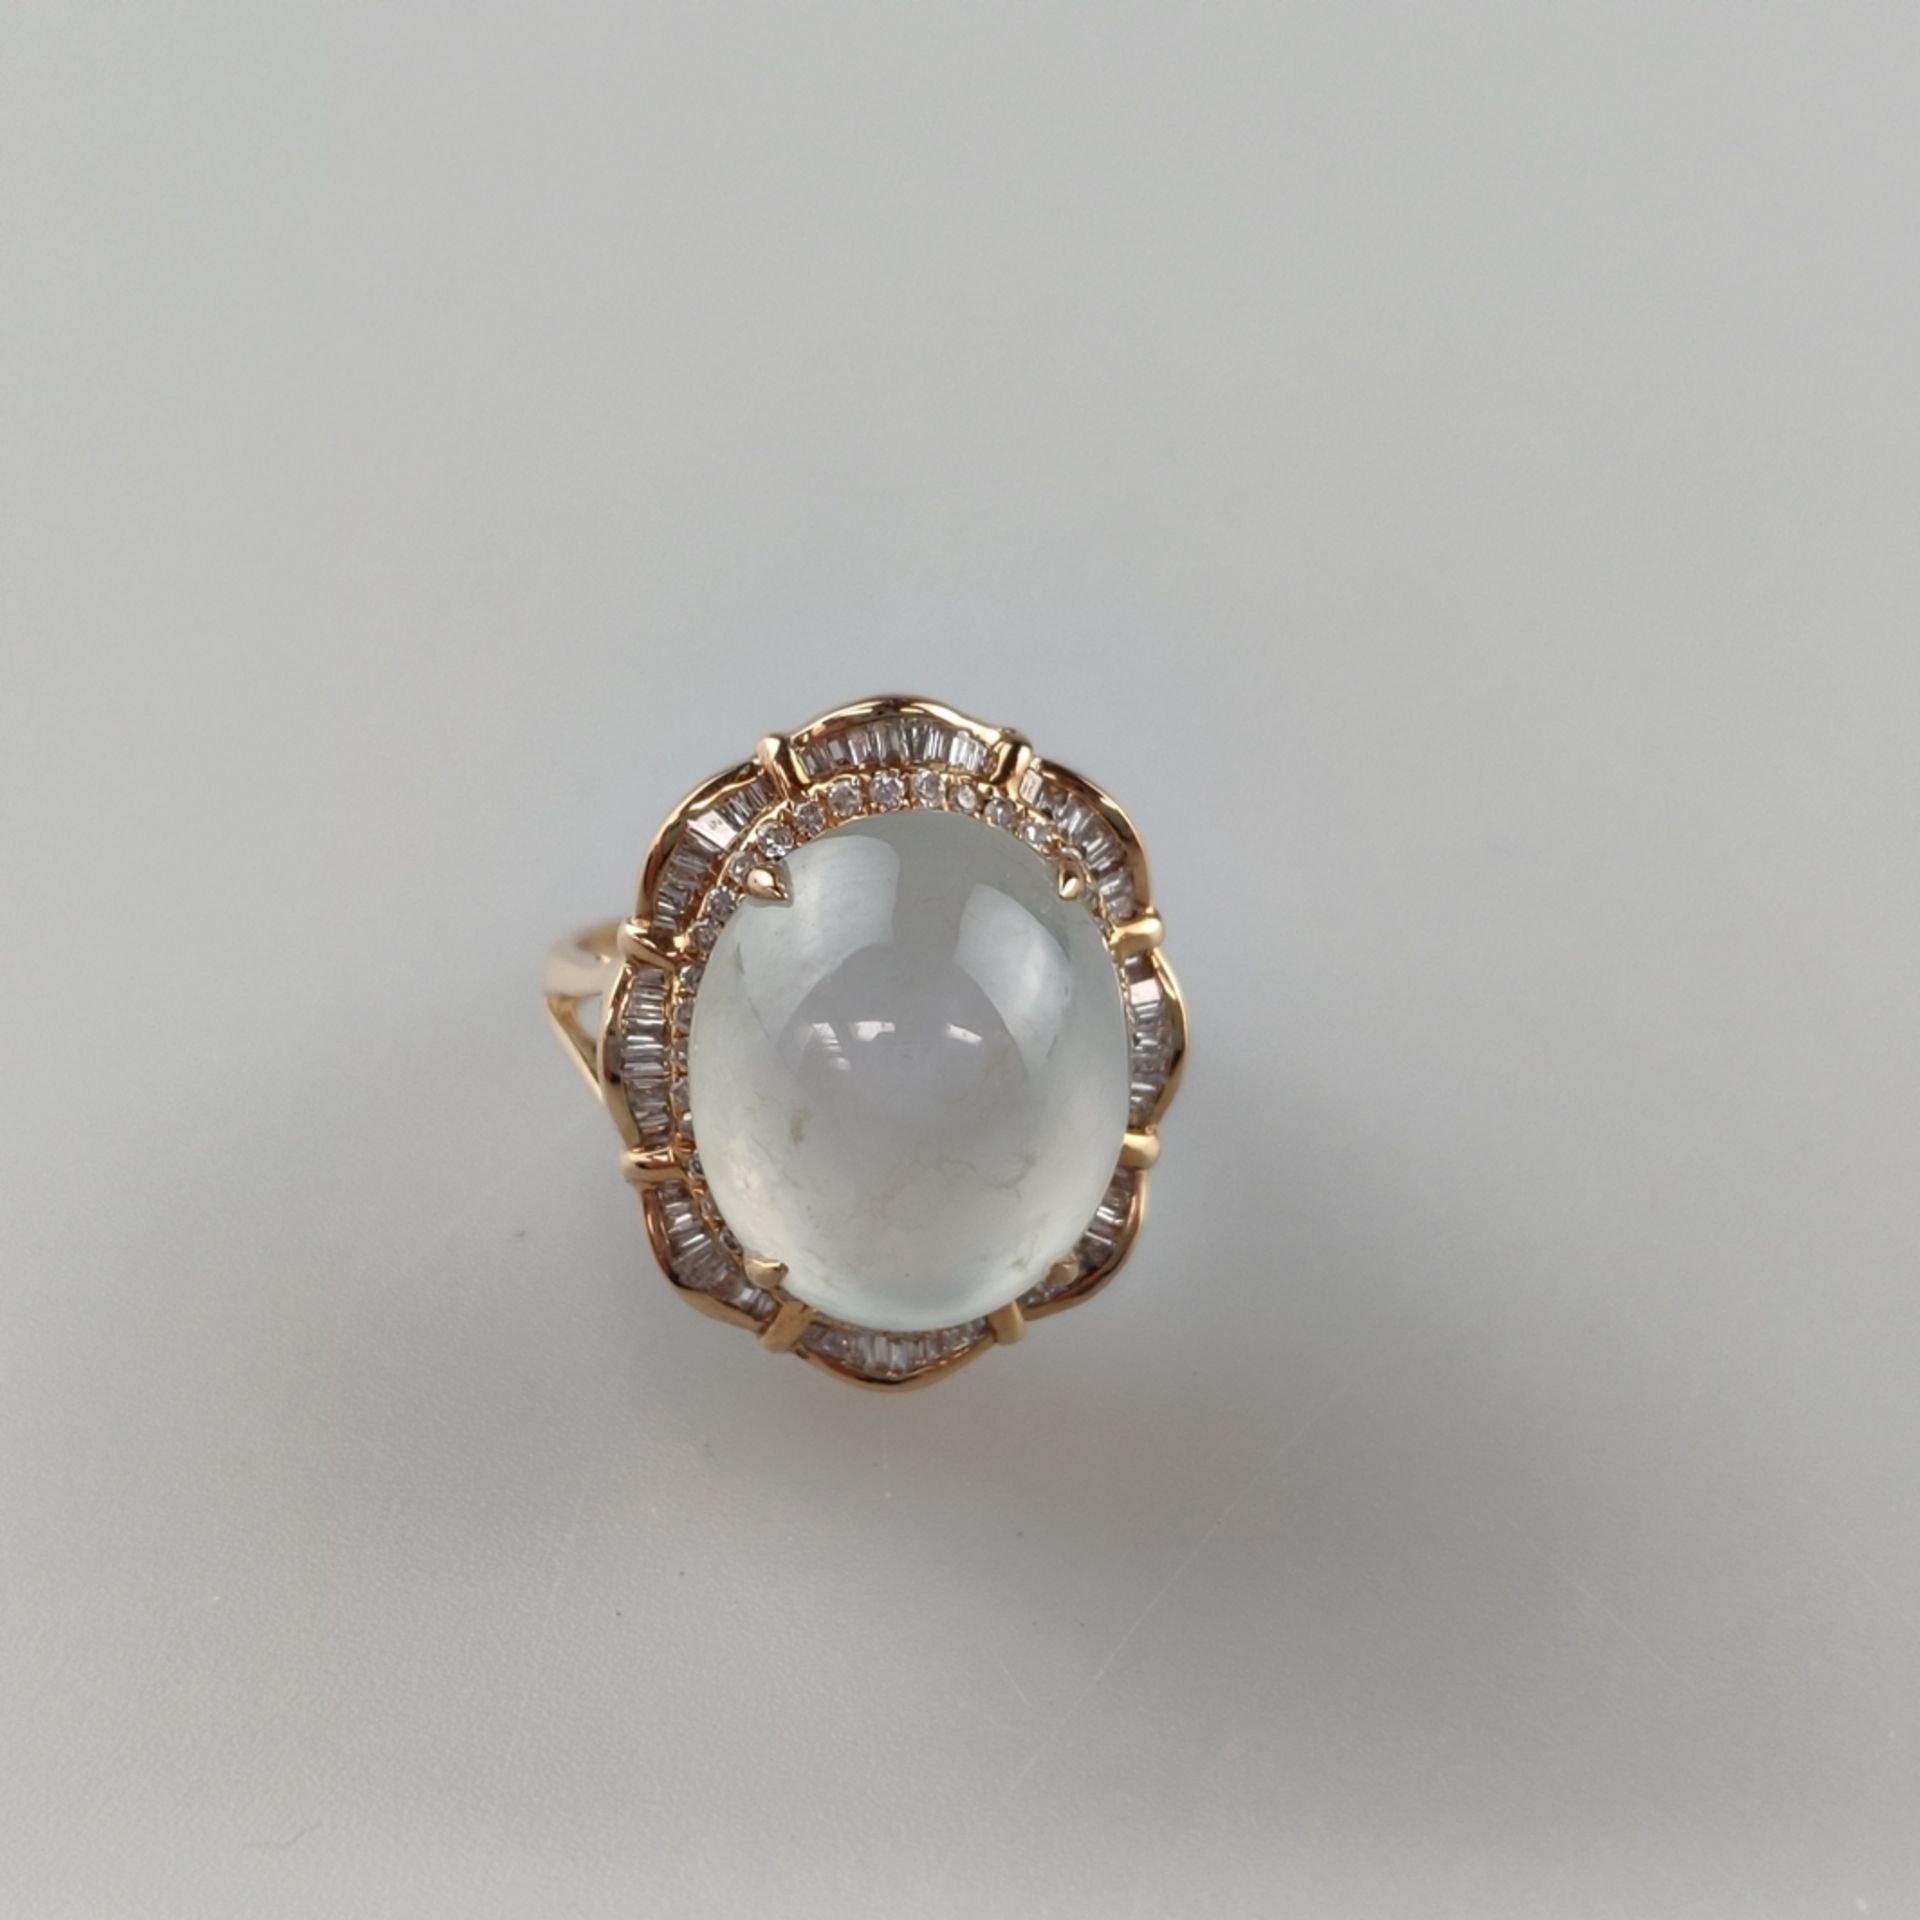 18K-Jadering mit Diamanten - Weißgold 750/000 (18K), Ringkopf mit milchig weißem Jadecabochon von c